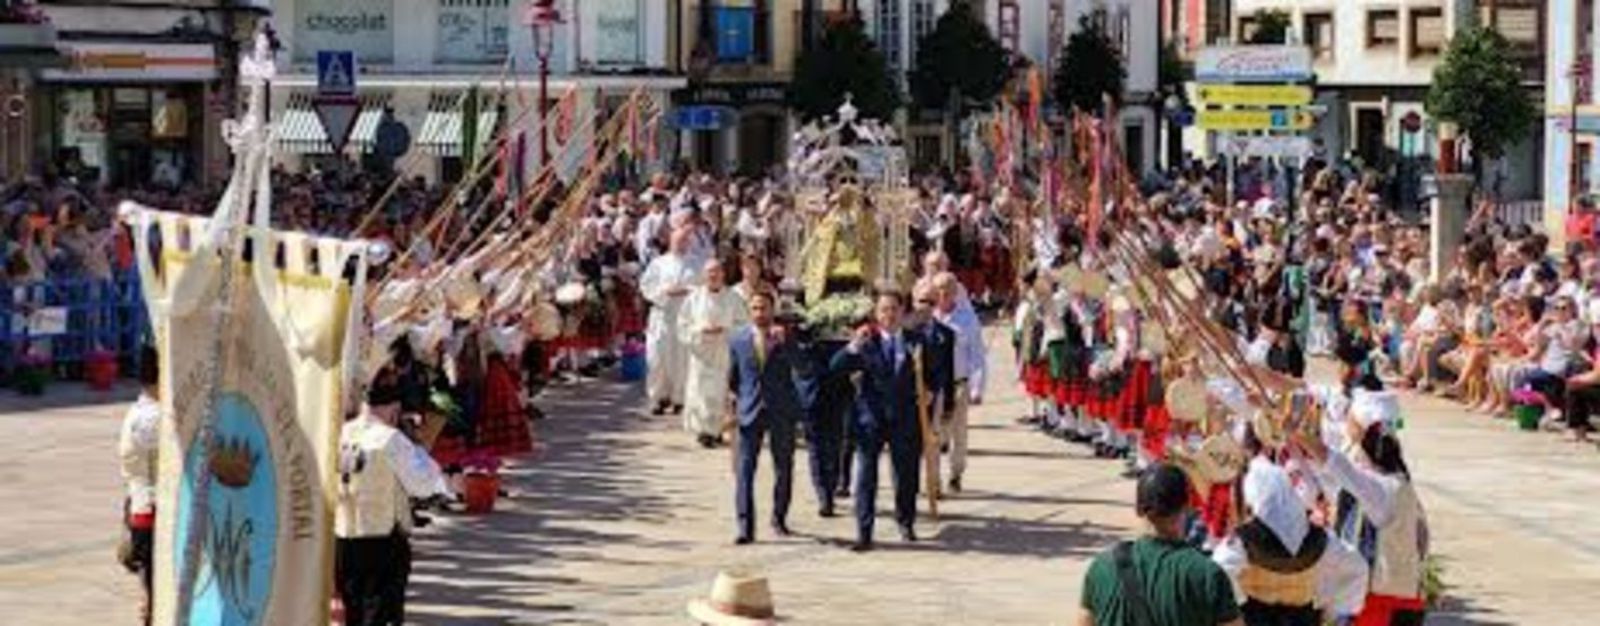 La llegada de la procesión a la plaza del Ayuntamiento.  